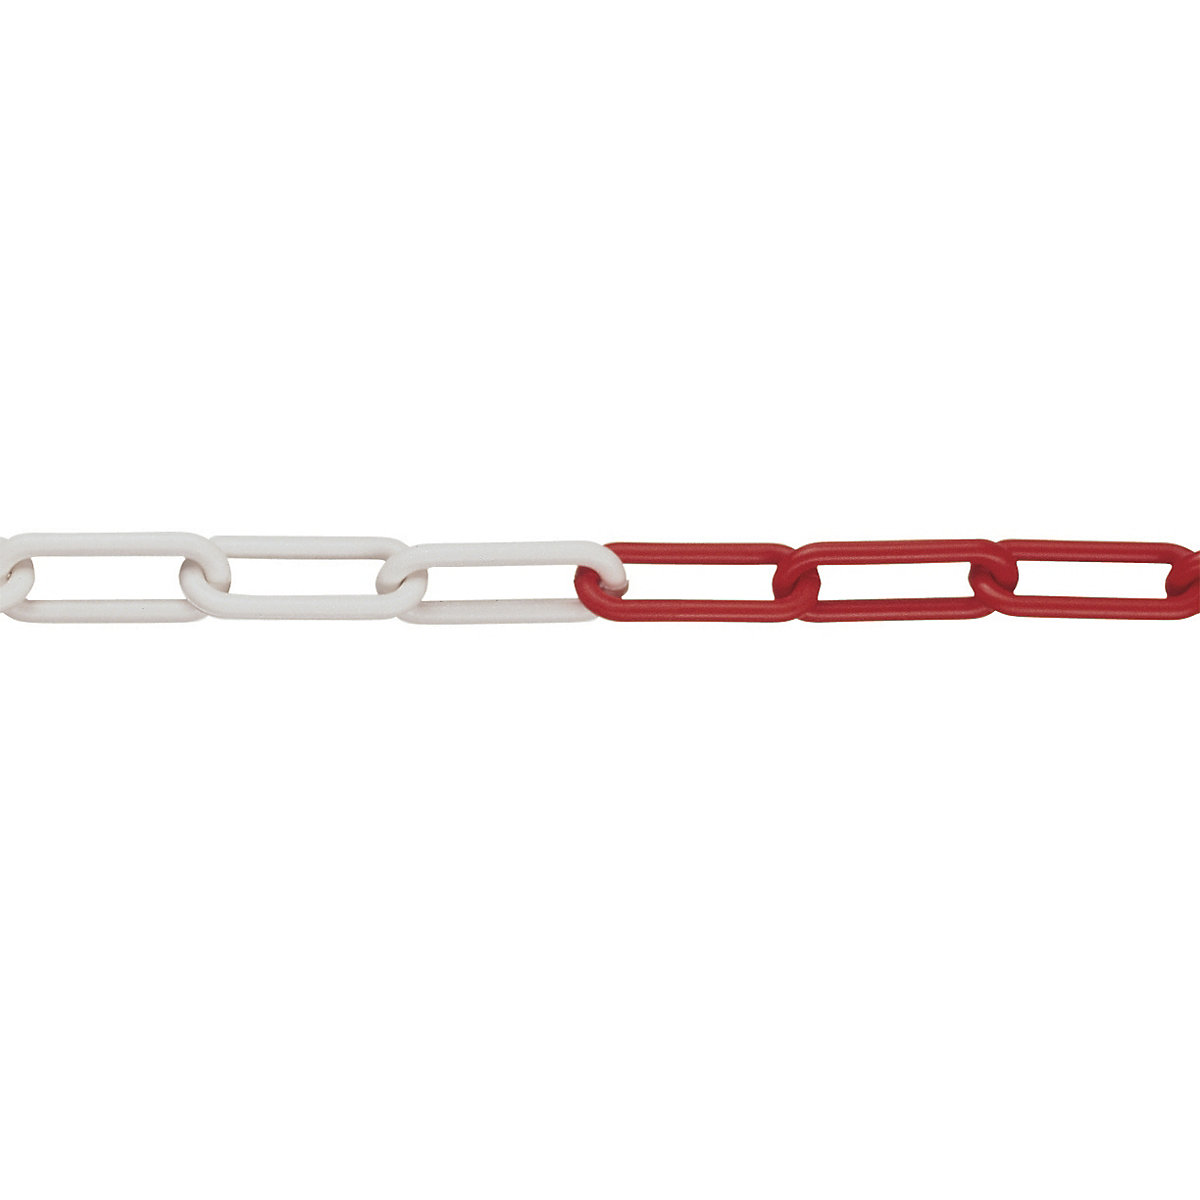 Lanț de siguranță din PE, grosime zale 8 mm, lungime lanț 25 m, roșu-alb, minimum 4 bucăți-2